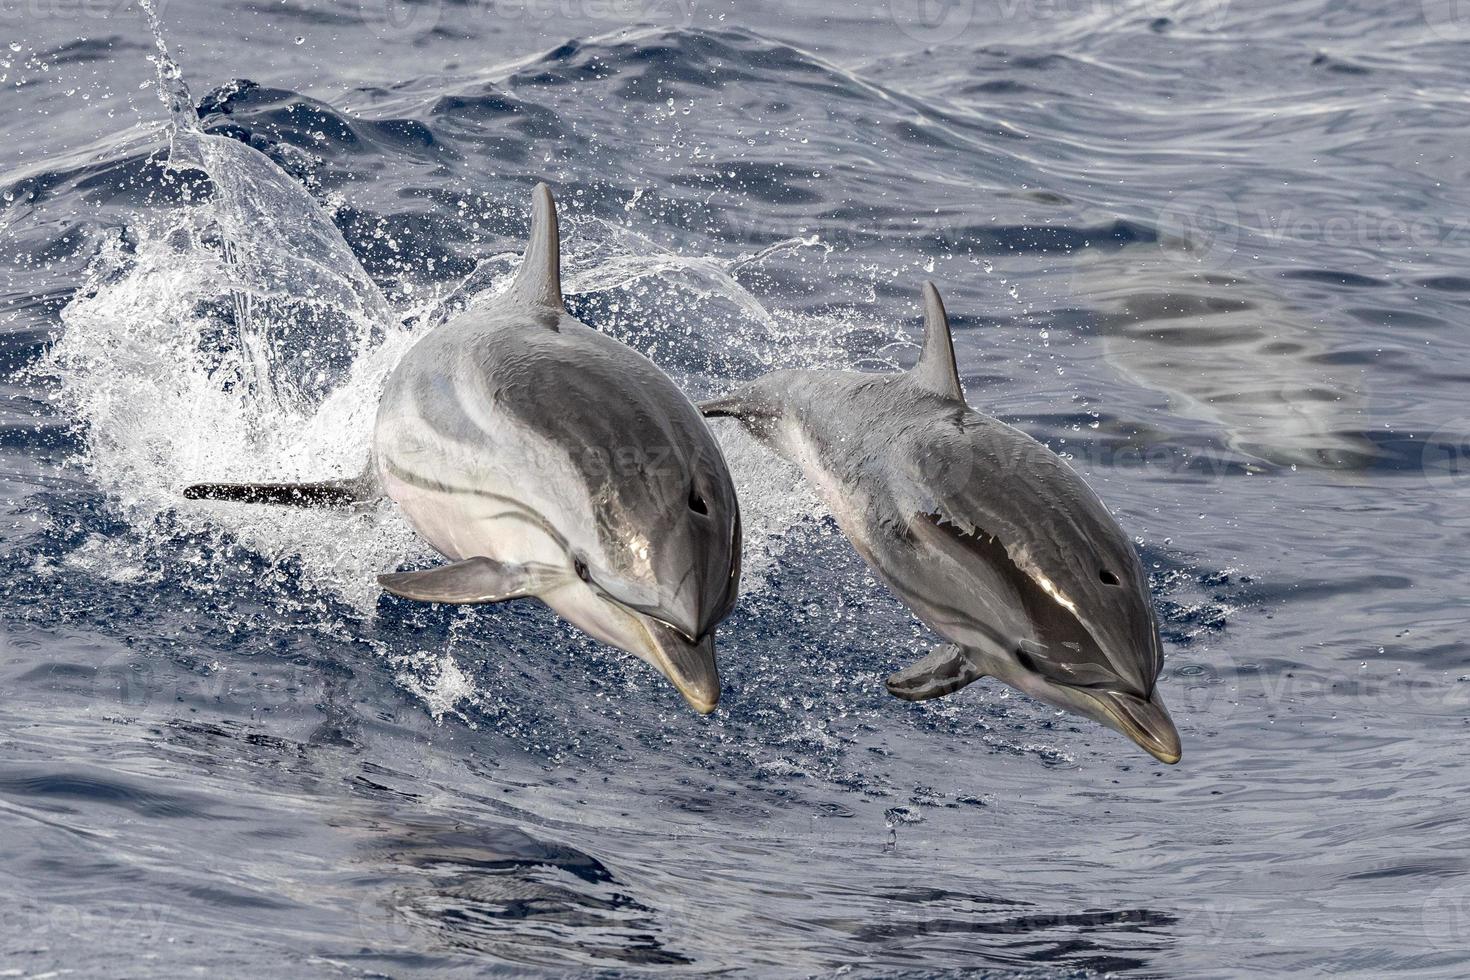 Baby neugeborener Delphin beim Springen außerhalb des Meeres mit Mutter foto